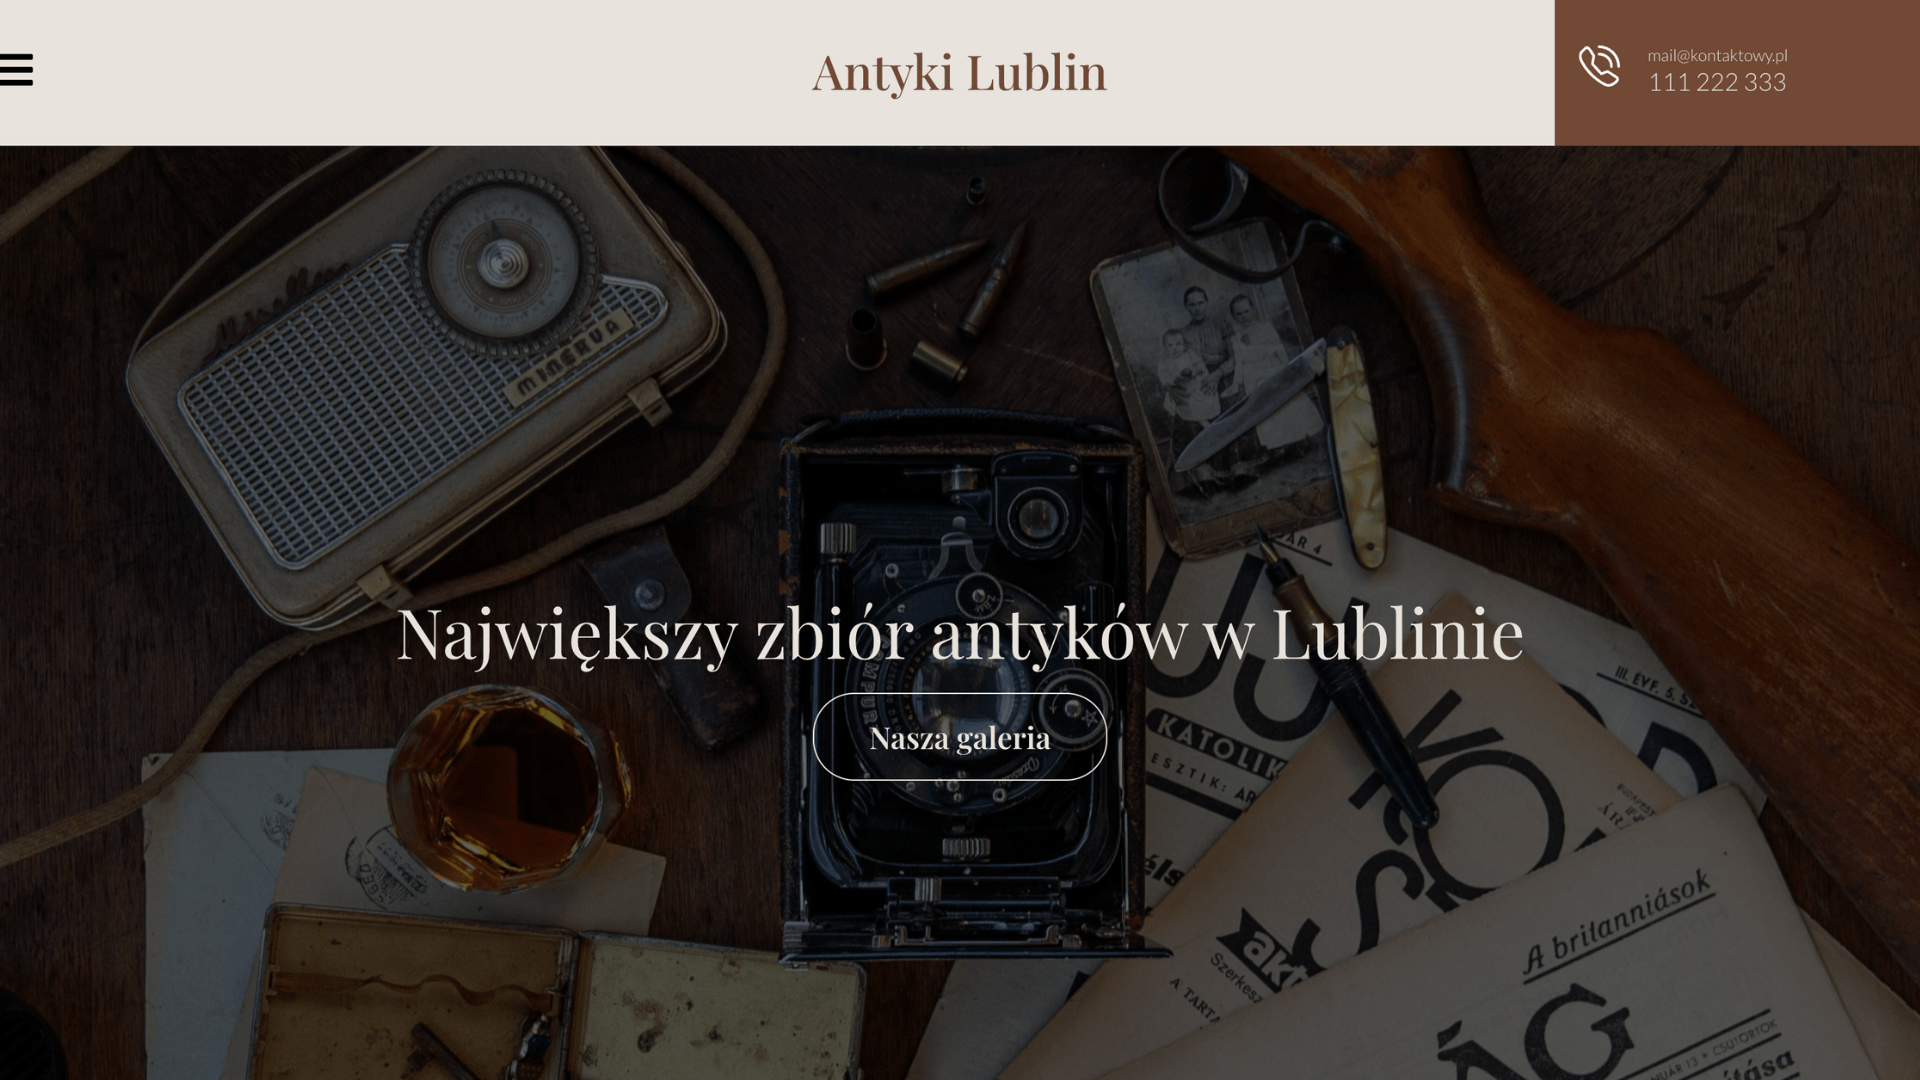 Antyki Lublin